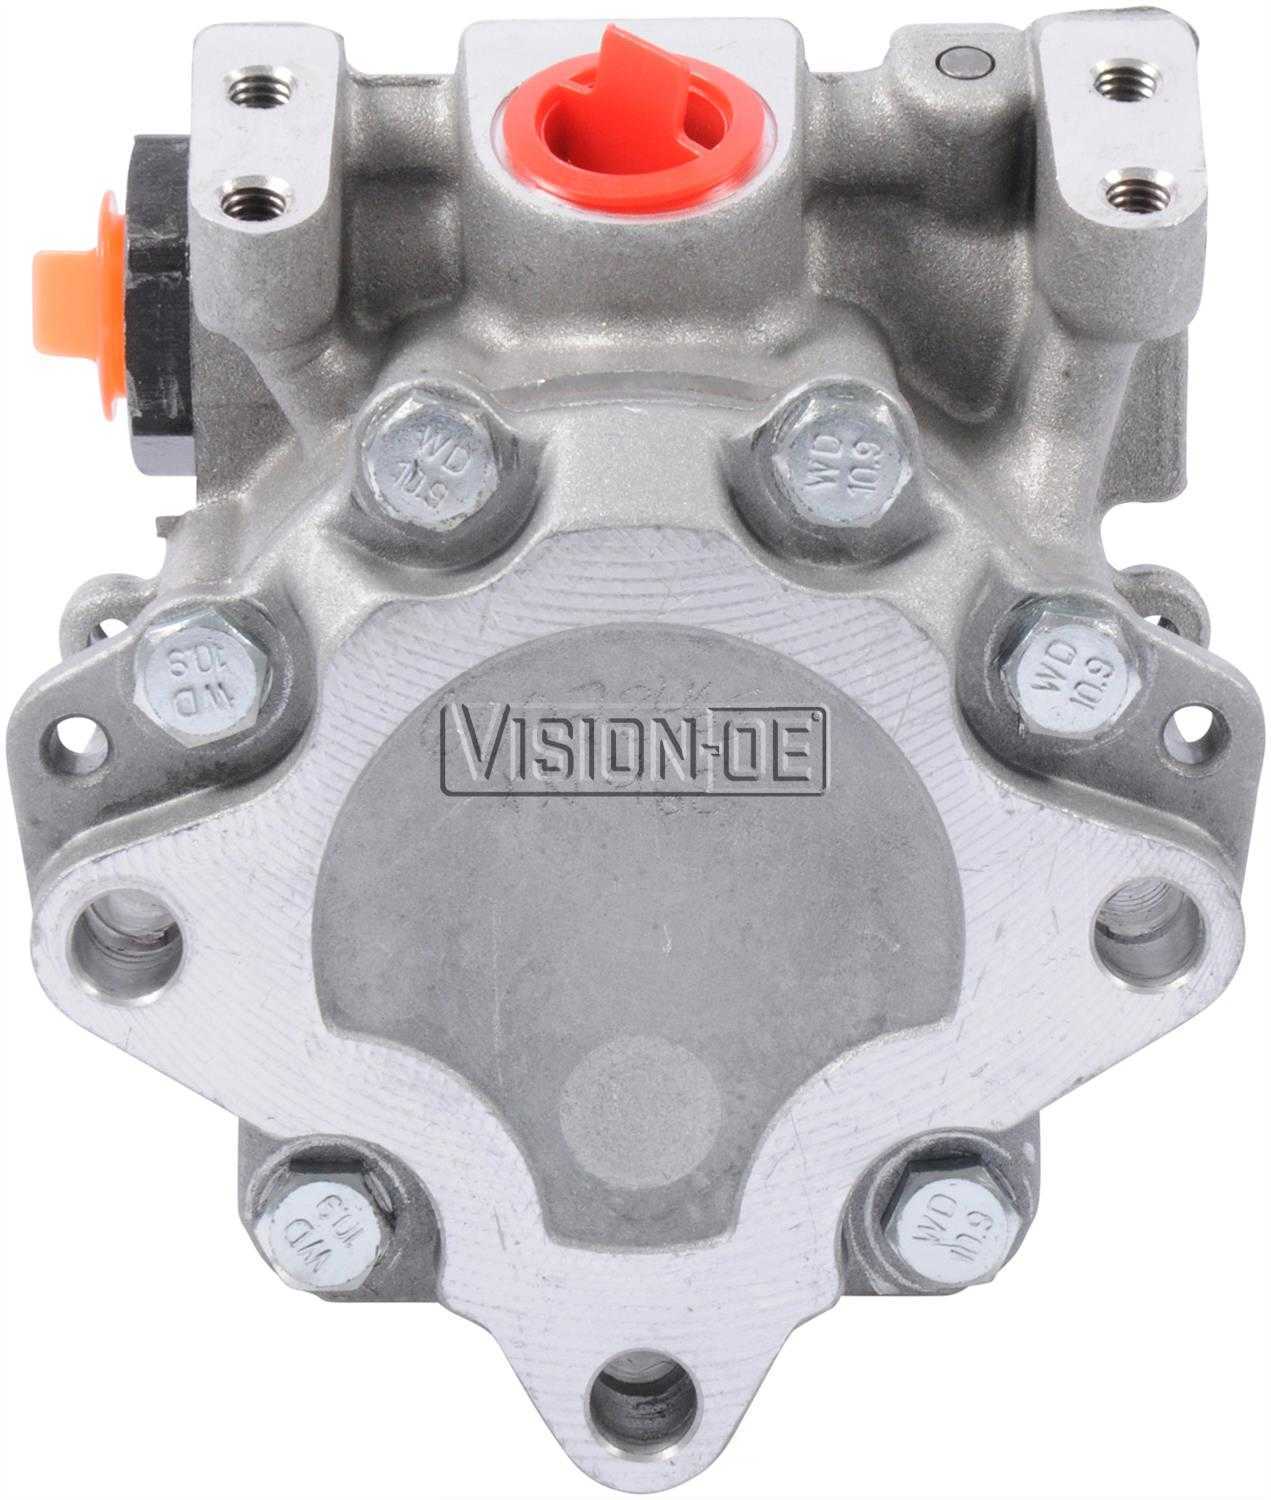 VISION-OE - New Power Steering Pump - VOE N950-0118